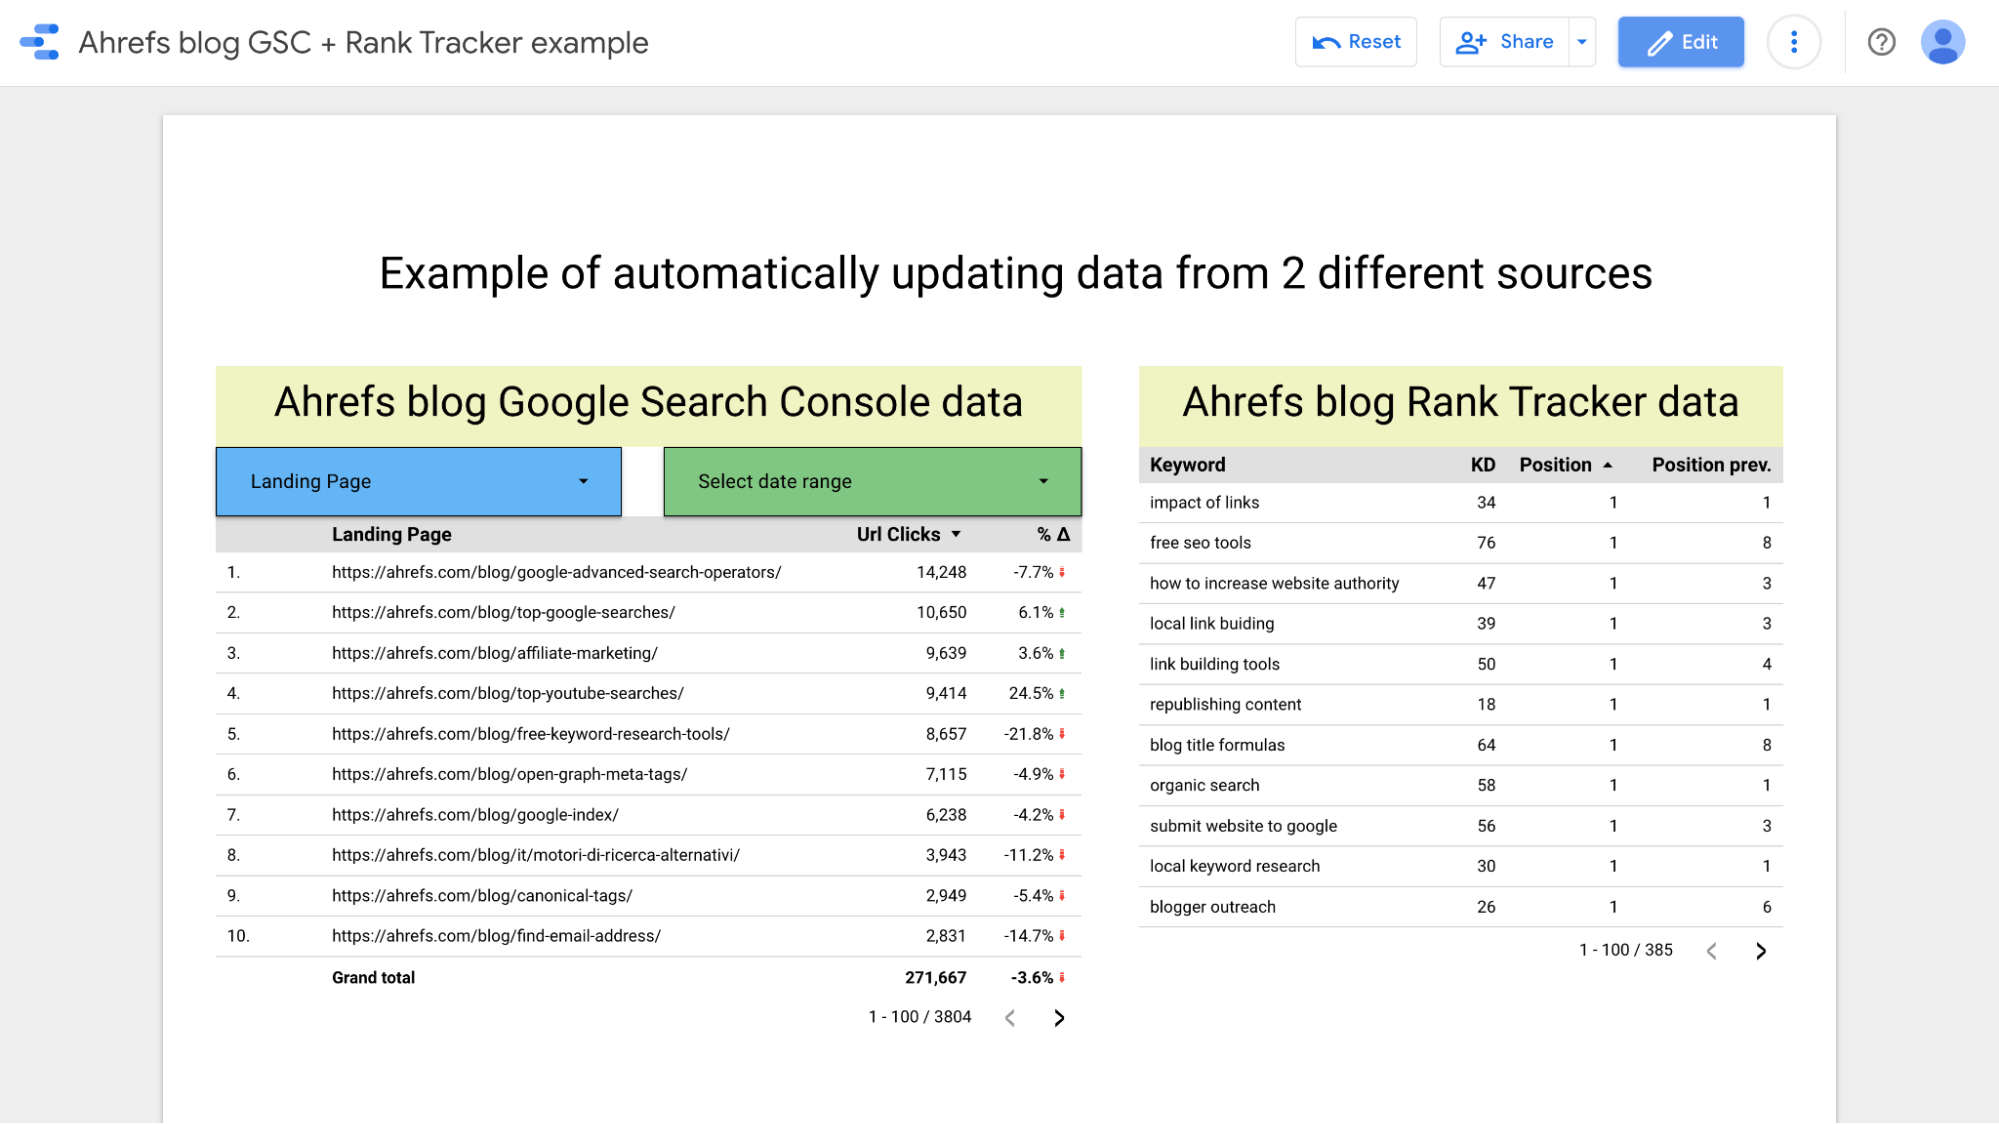 Datos en el blog de Ahrefs de GSC y Rank Tracker de Ahrefs, respectivamente, incluidos en un informe.